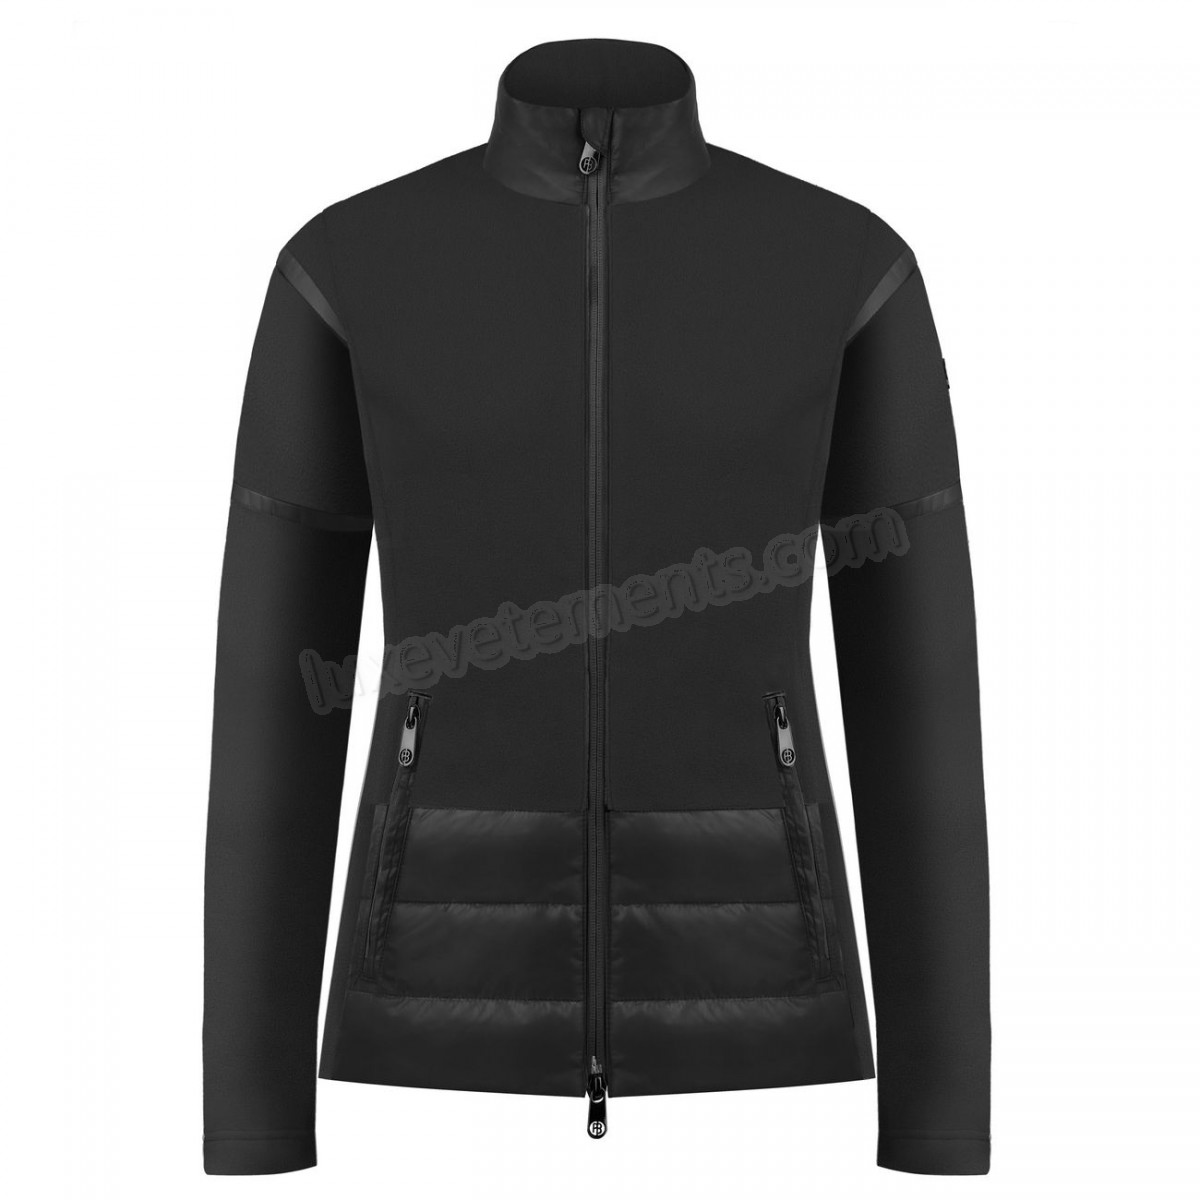 Poivre Blanc-Sports d'hiver femme POIVRE BLANC Veste Polaire Poivre Blanc Hybrid Fleece Jacket 1601 Black Femme Vente en ligne - -5